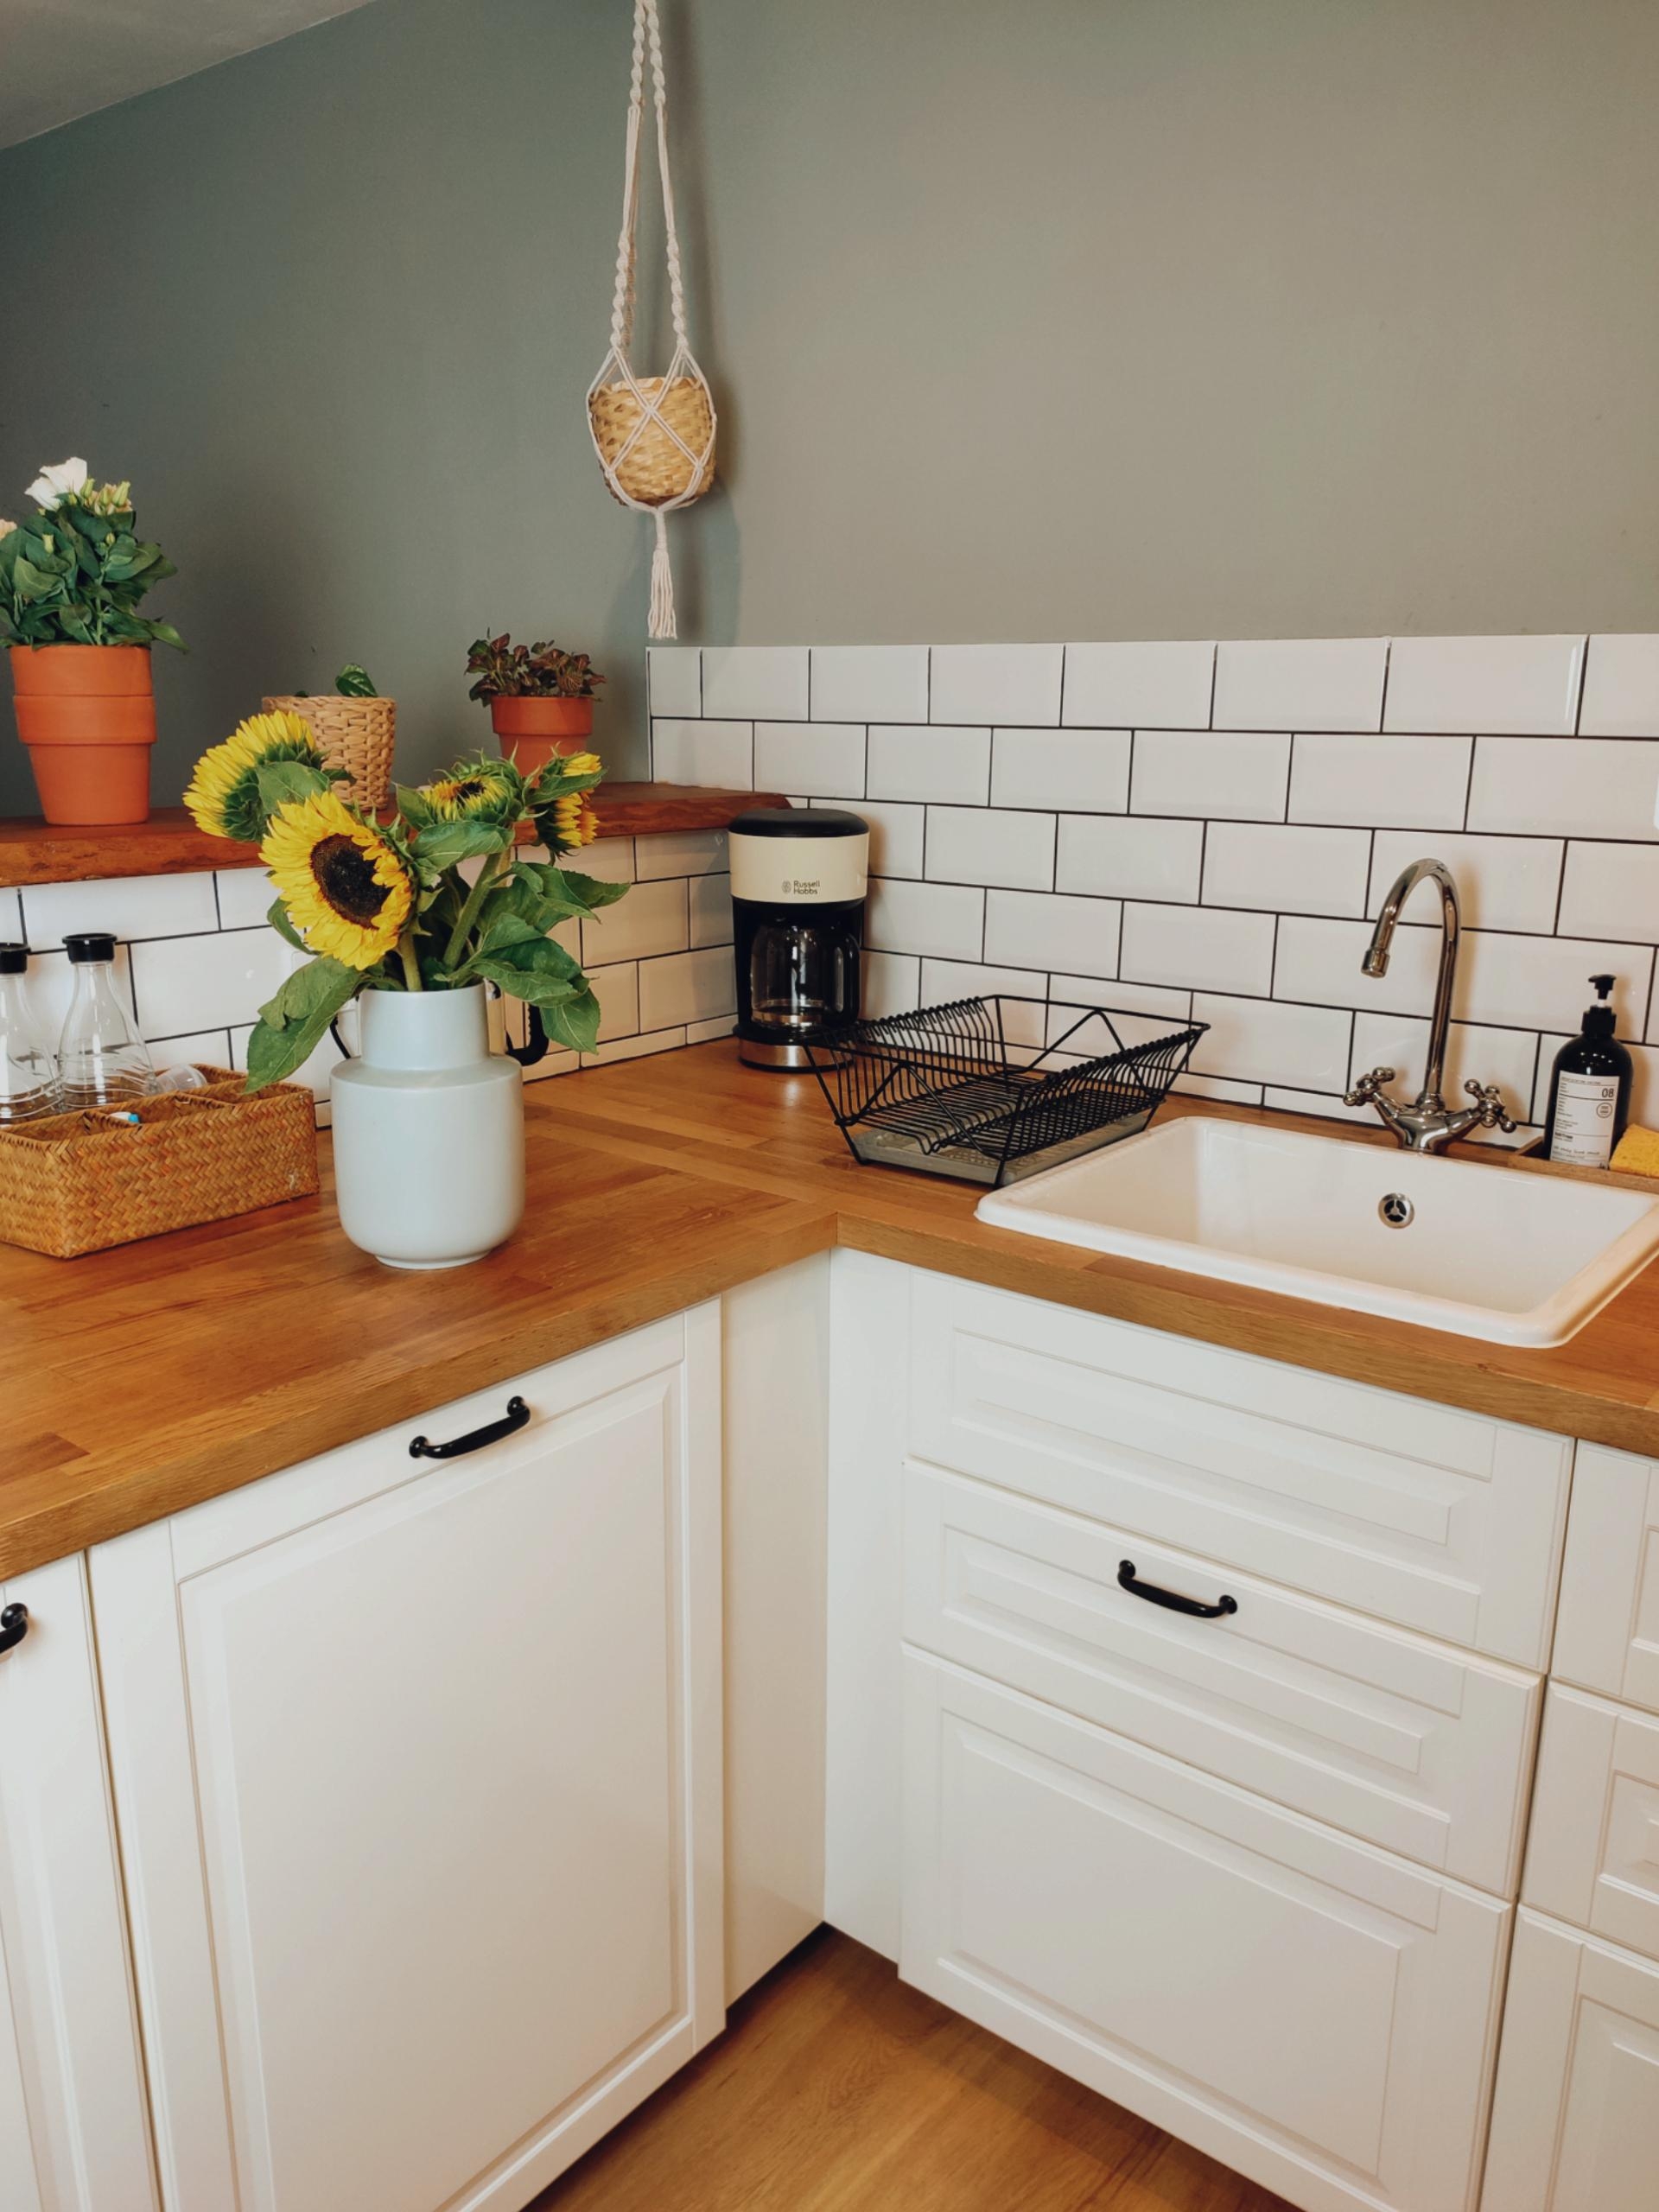 Täglich grüßt die Küche🙋🏻‍♀️🤷🏻‍♀️
#kitchen
#sunflowers
#kitcheninspo